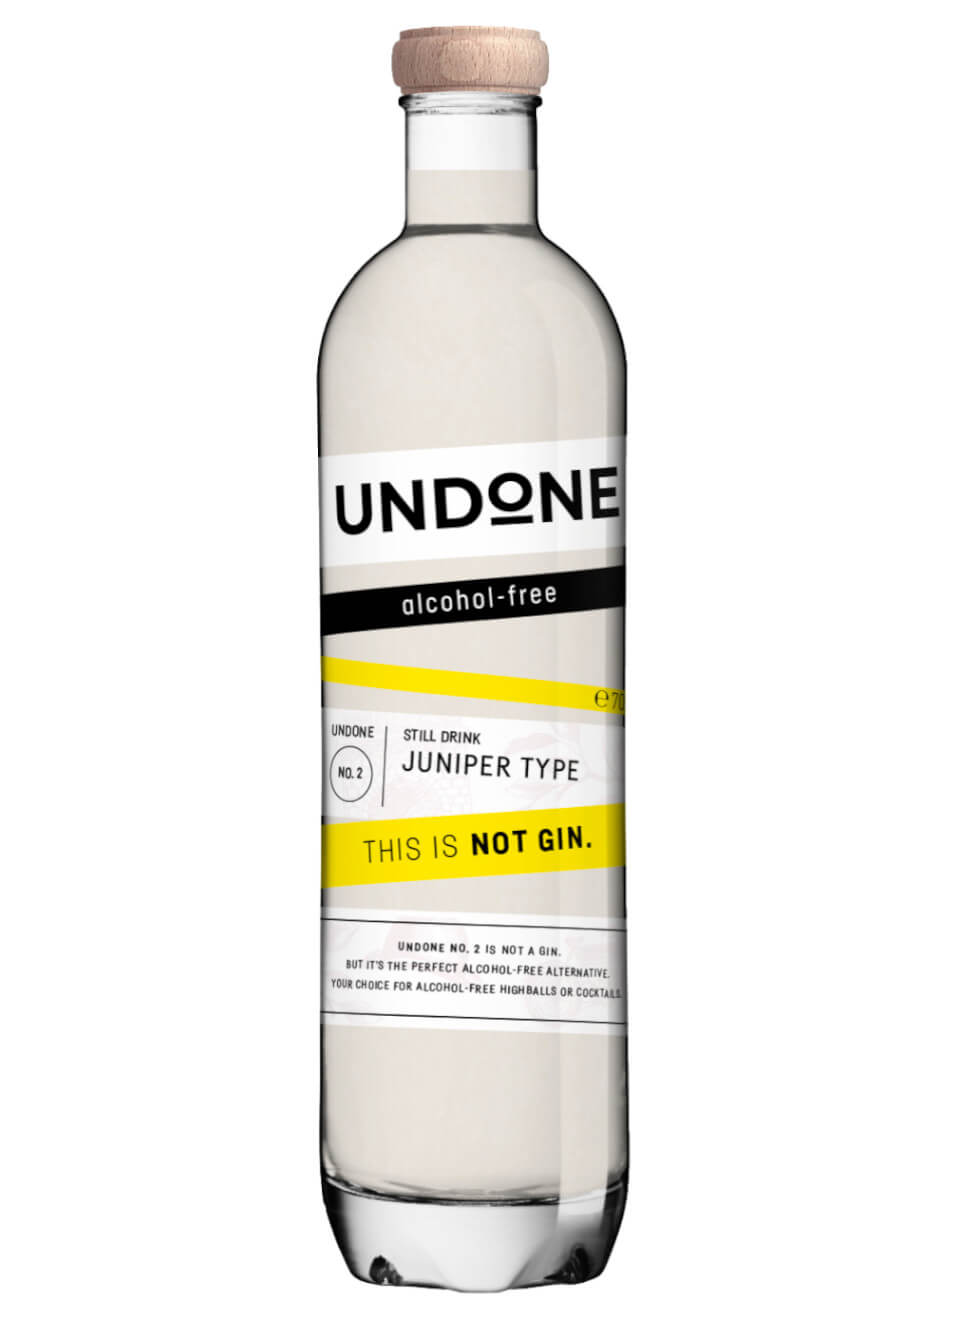 Undone No 2 Juniper Type Alkoholfreier Gin 0 7 L Gunstig Kaufen Spirituosenworld De Online Shop Fur Spirituosen Und Barzubehor